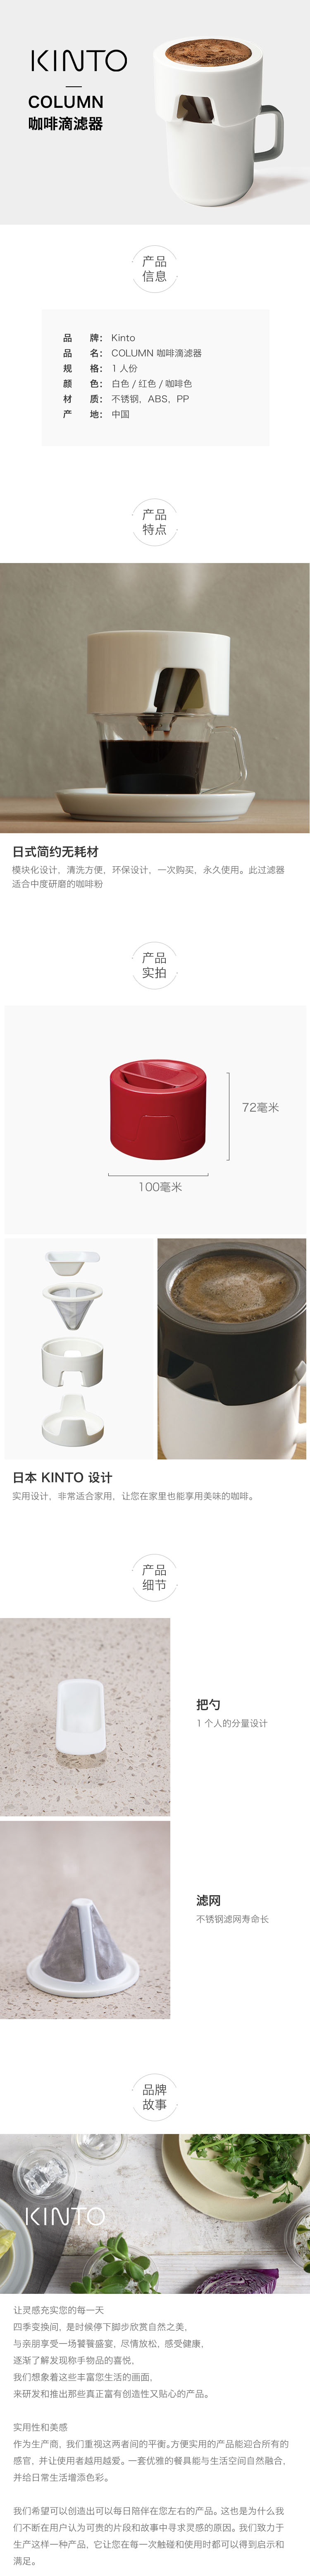 COLUMN 咖啡滴滤器